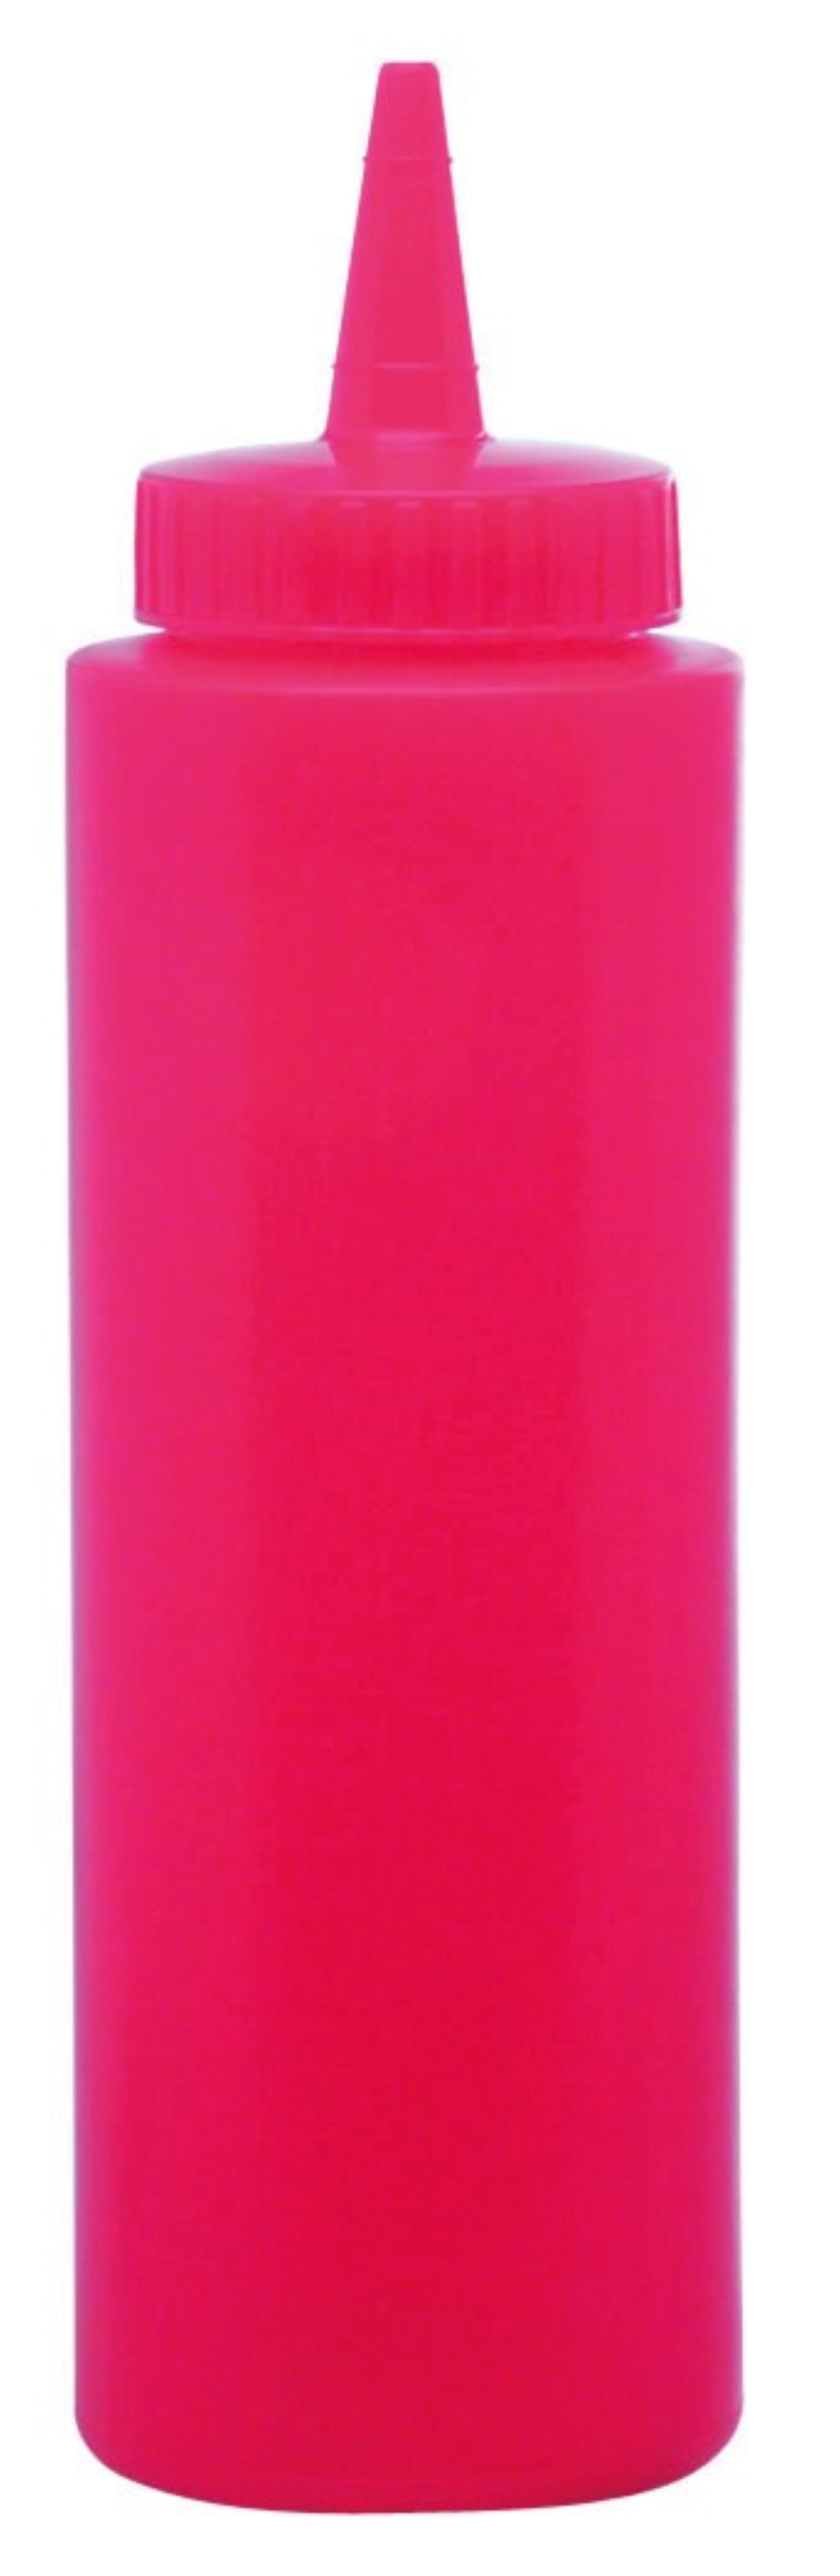 Saucen Dispenser Rot 0.708lt - KAQTU Design